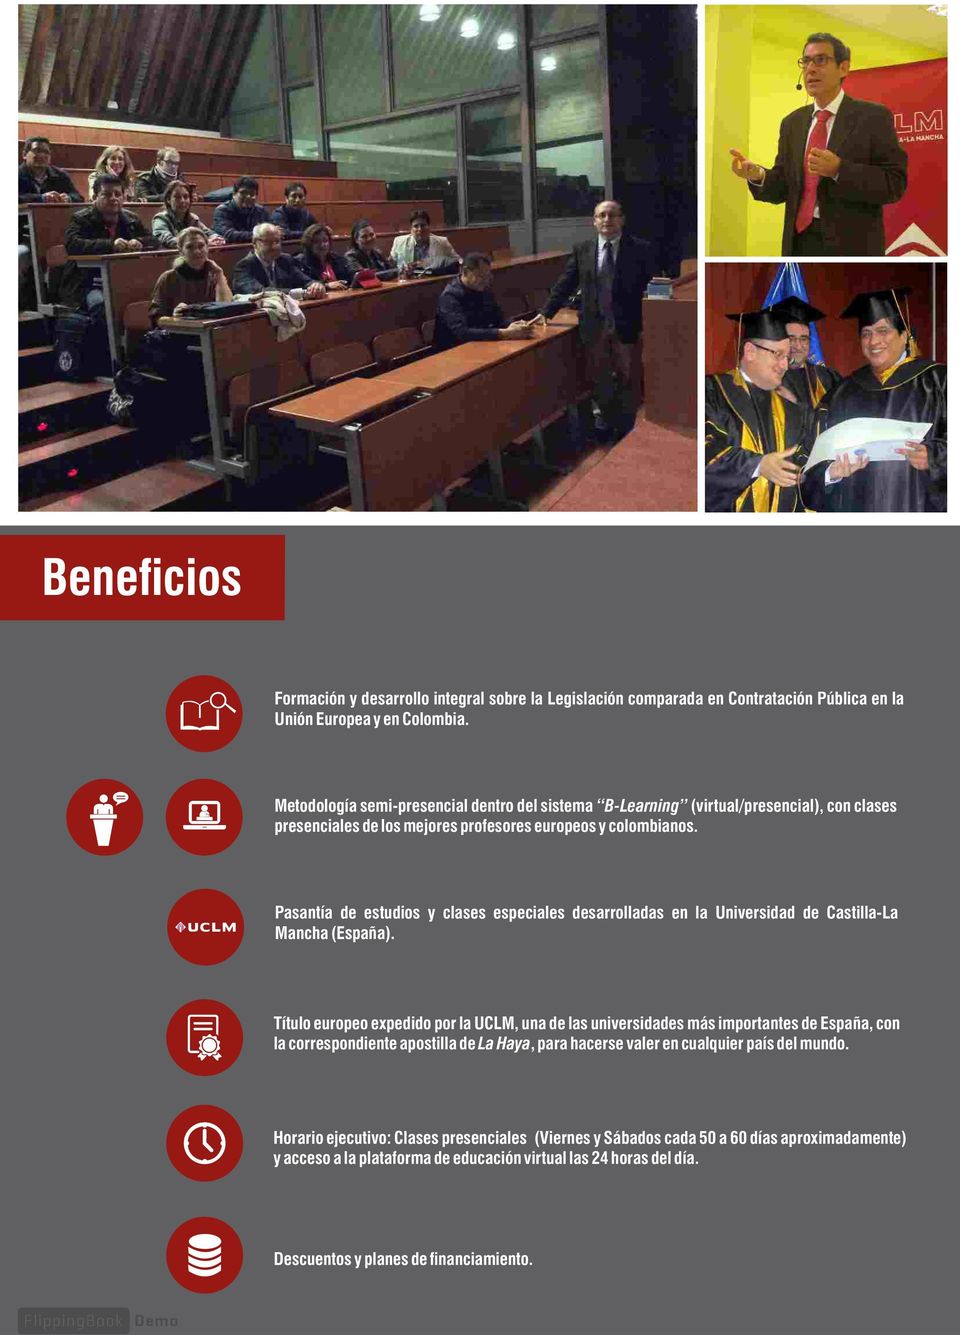 Pasantía de estudios y clases especiales desarrolladas en la Universidad de Castilla-La Mancha (España).